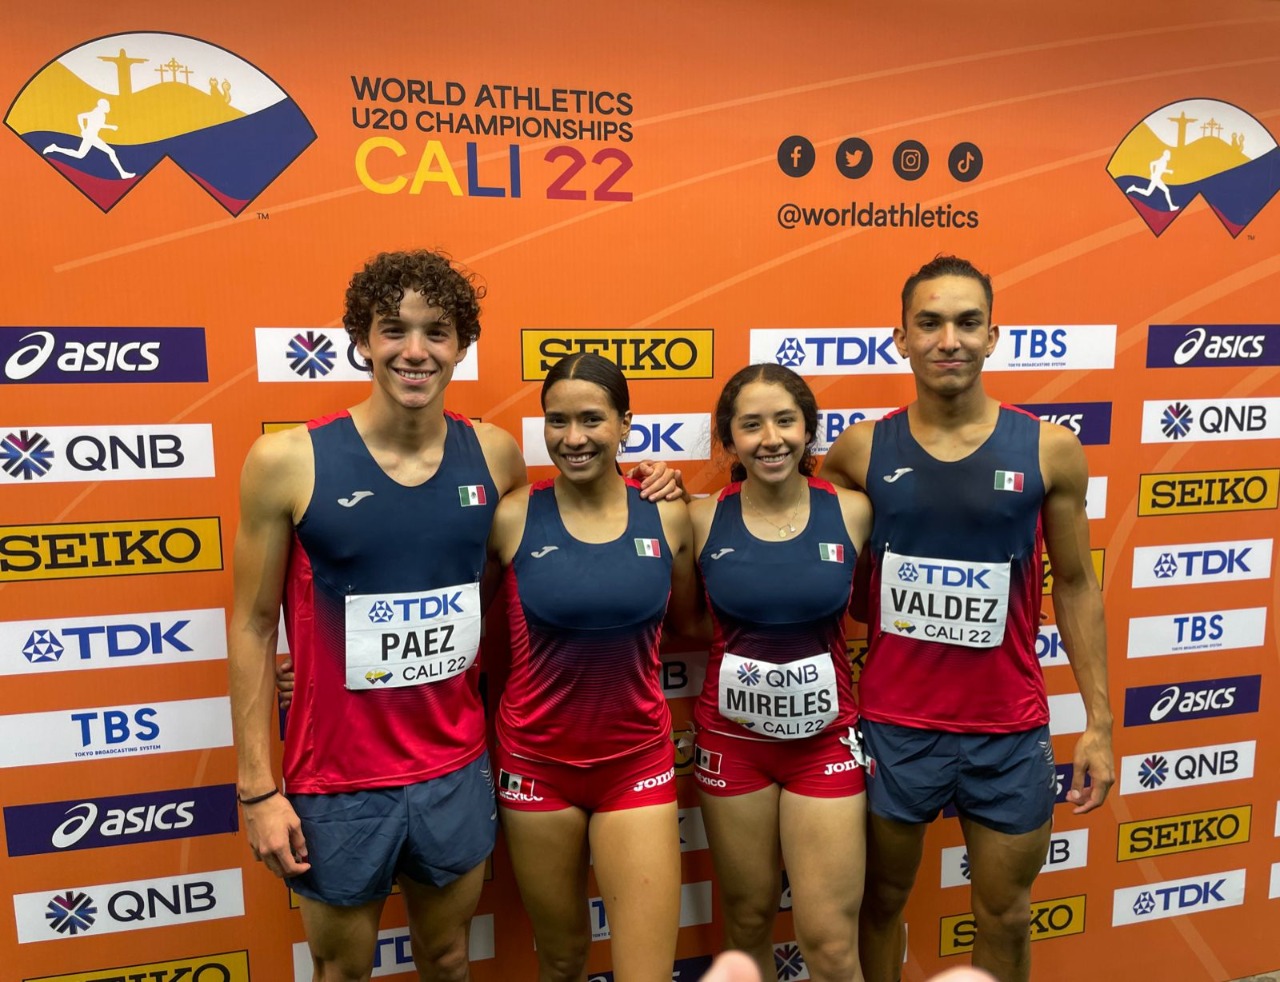 El corredor sonorense Cristian Valdez impone récord nacional en el Mundial de Atletismo Sub 20